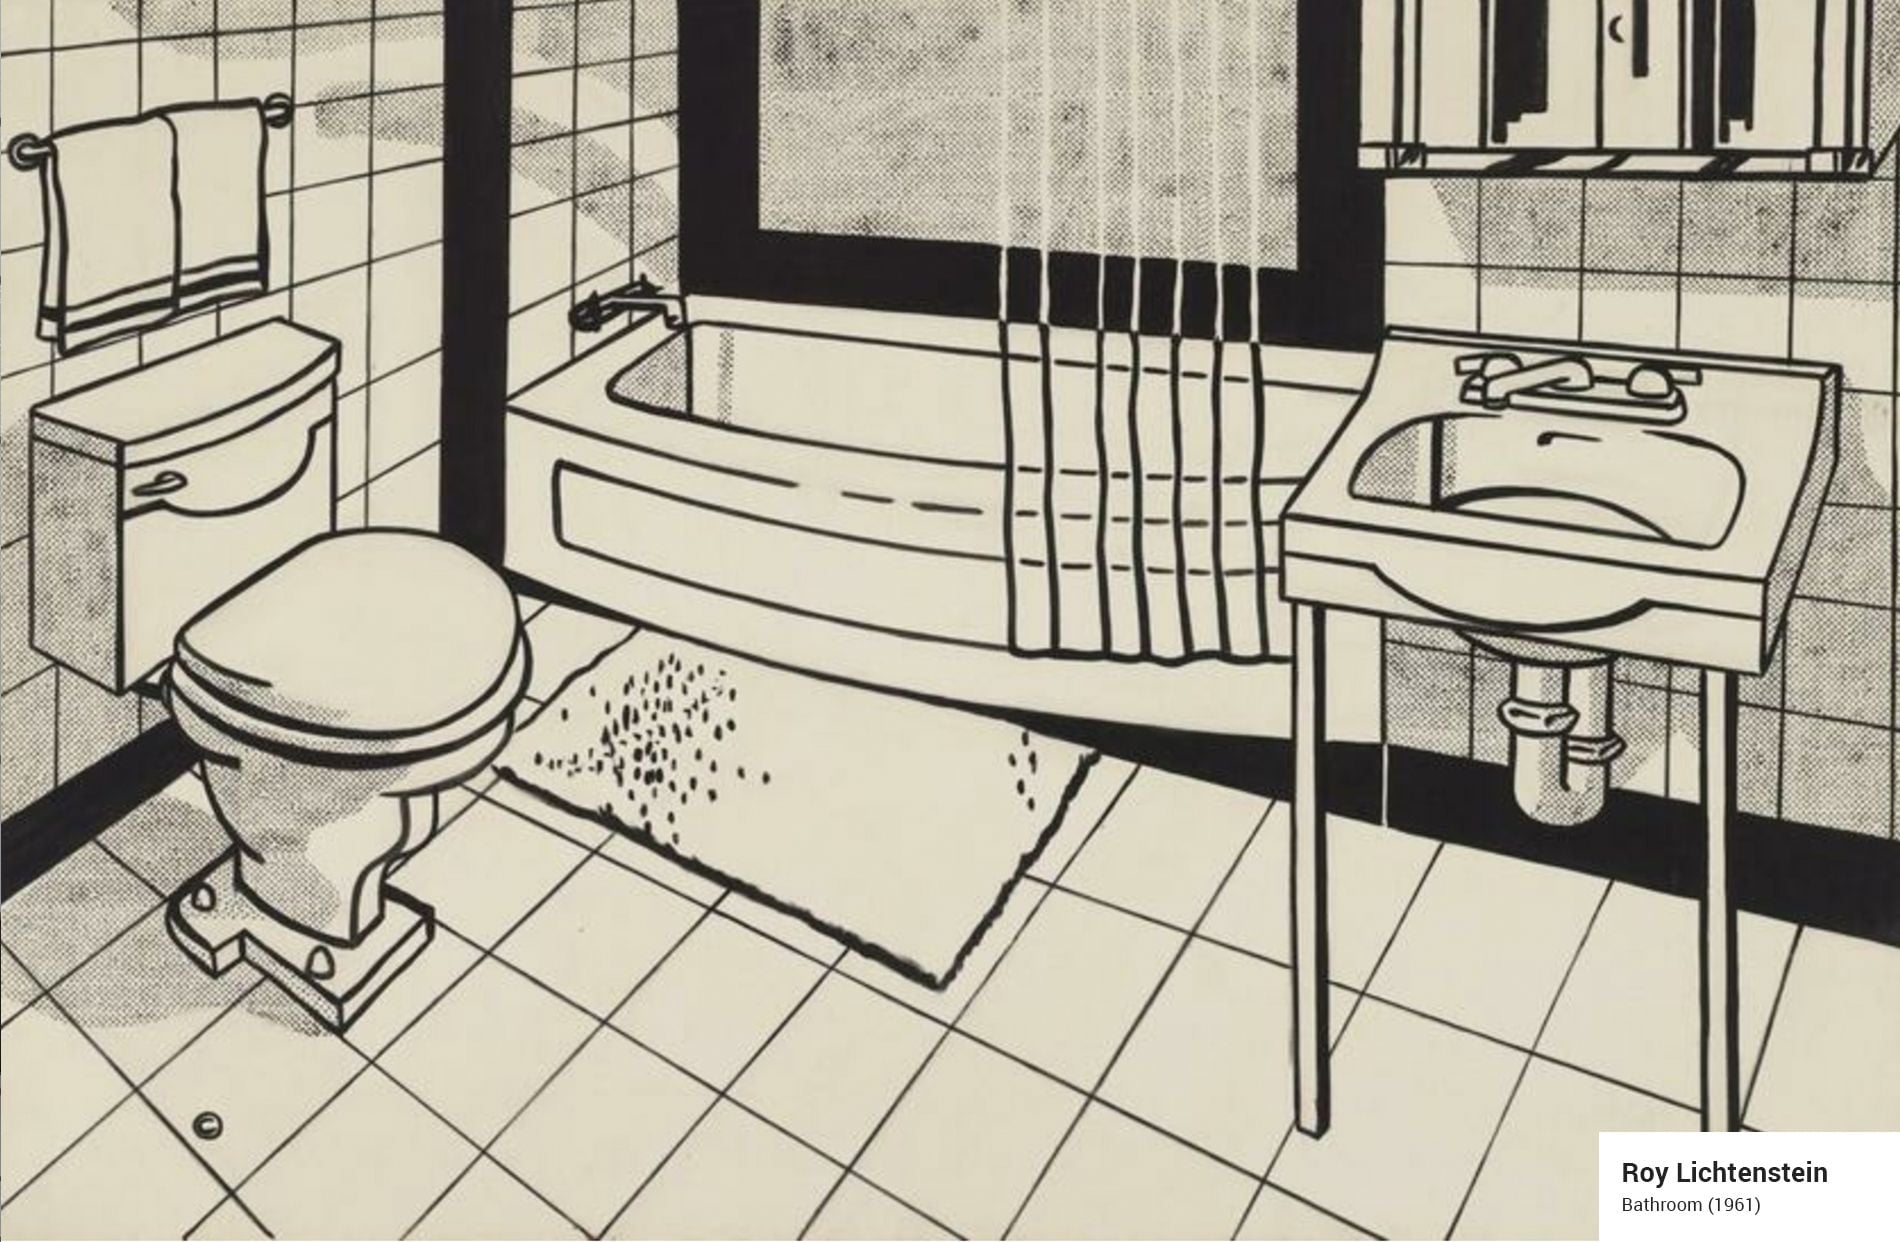 Roy Lichtenstein's iconic 1961 